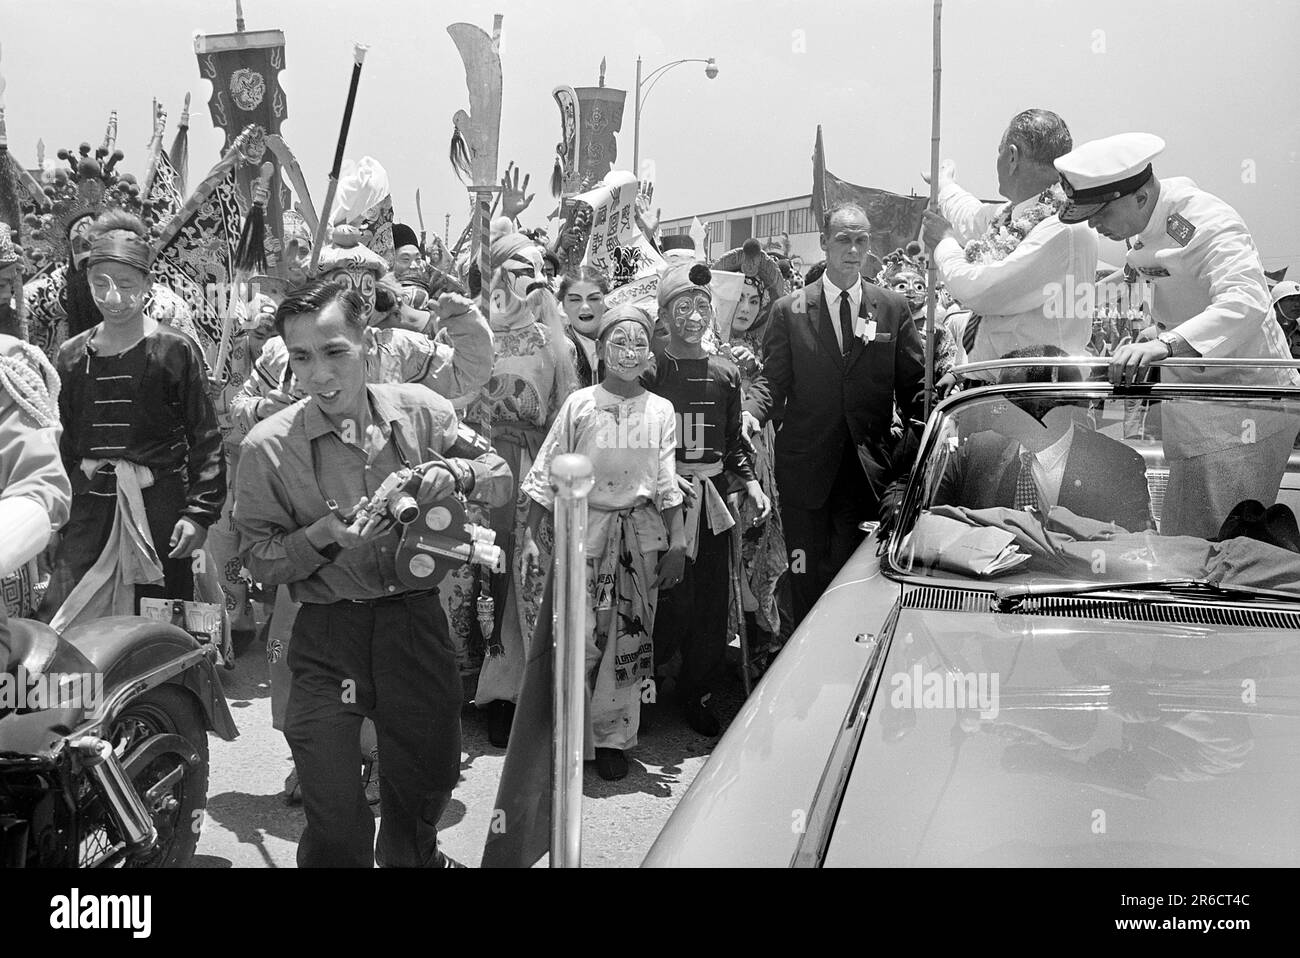 STATI UNITI Il Vice Presidente Lyndon B. Johnson, in piedi in un'auto, come l'agente del Servizio Segreto sta accanto, dicendo addio alle folle in aeroporto, prima di lasciare Saigon, Vietnam del Sud, Thomas J. o'Halloran, Stati Uniti News & World Report Magazine Photograph Collection, 13 maggio 1961 Foto Stock